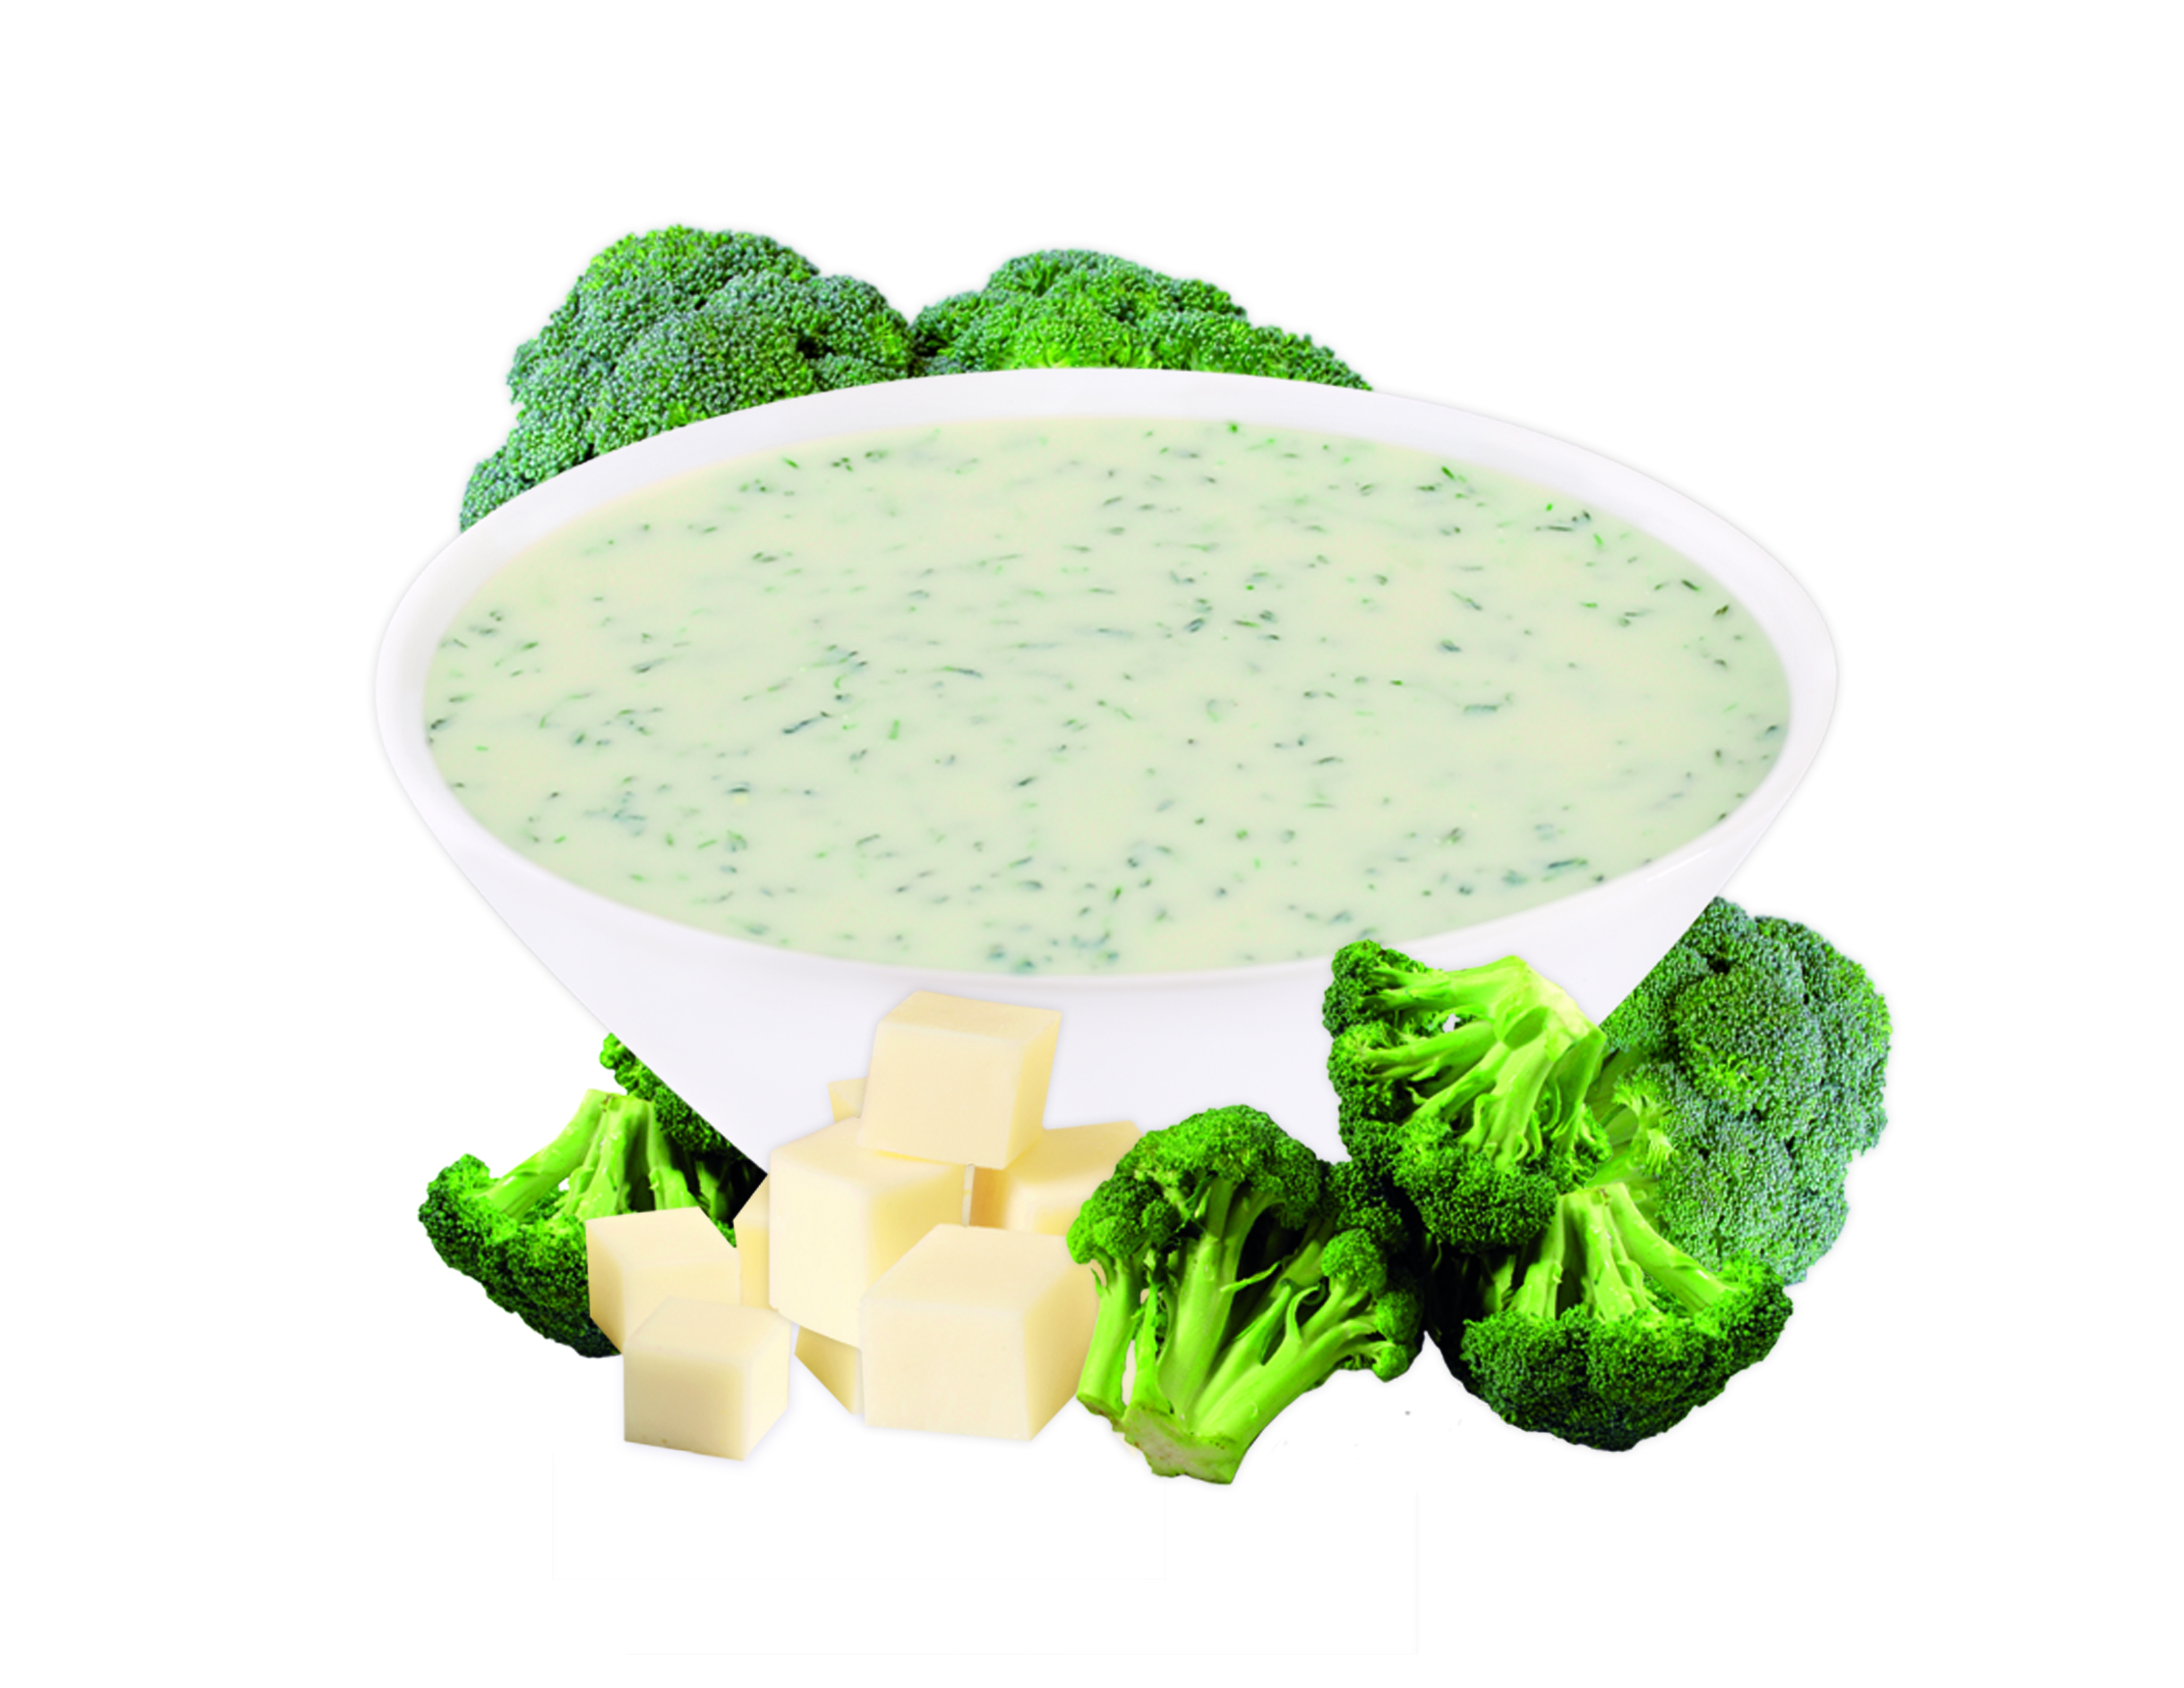 broccoli clipart broccoli soup